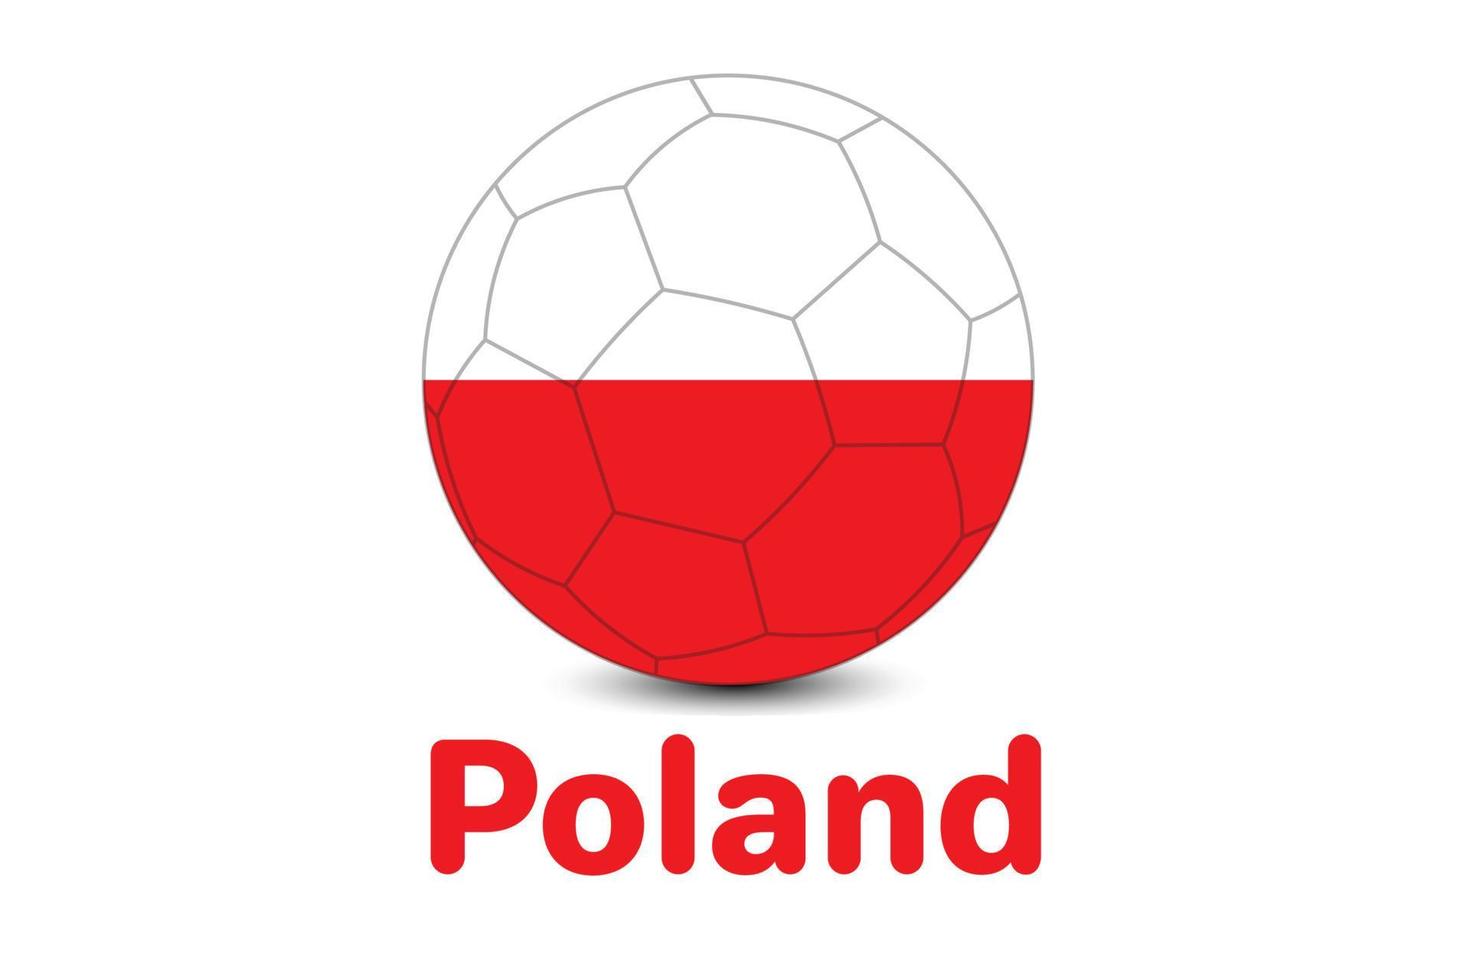 calcio Coppa del Mondo 2022 con Polonia bandiera. Qatar mondo tazza 2022. vettore